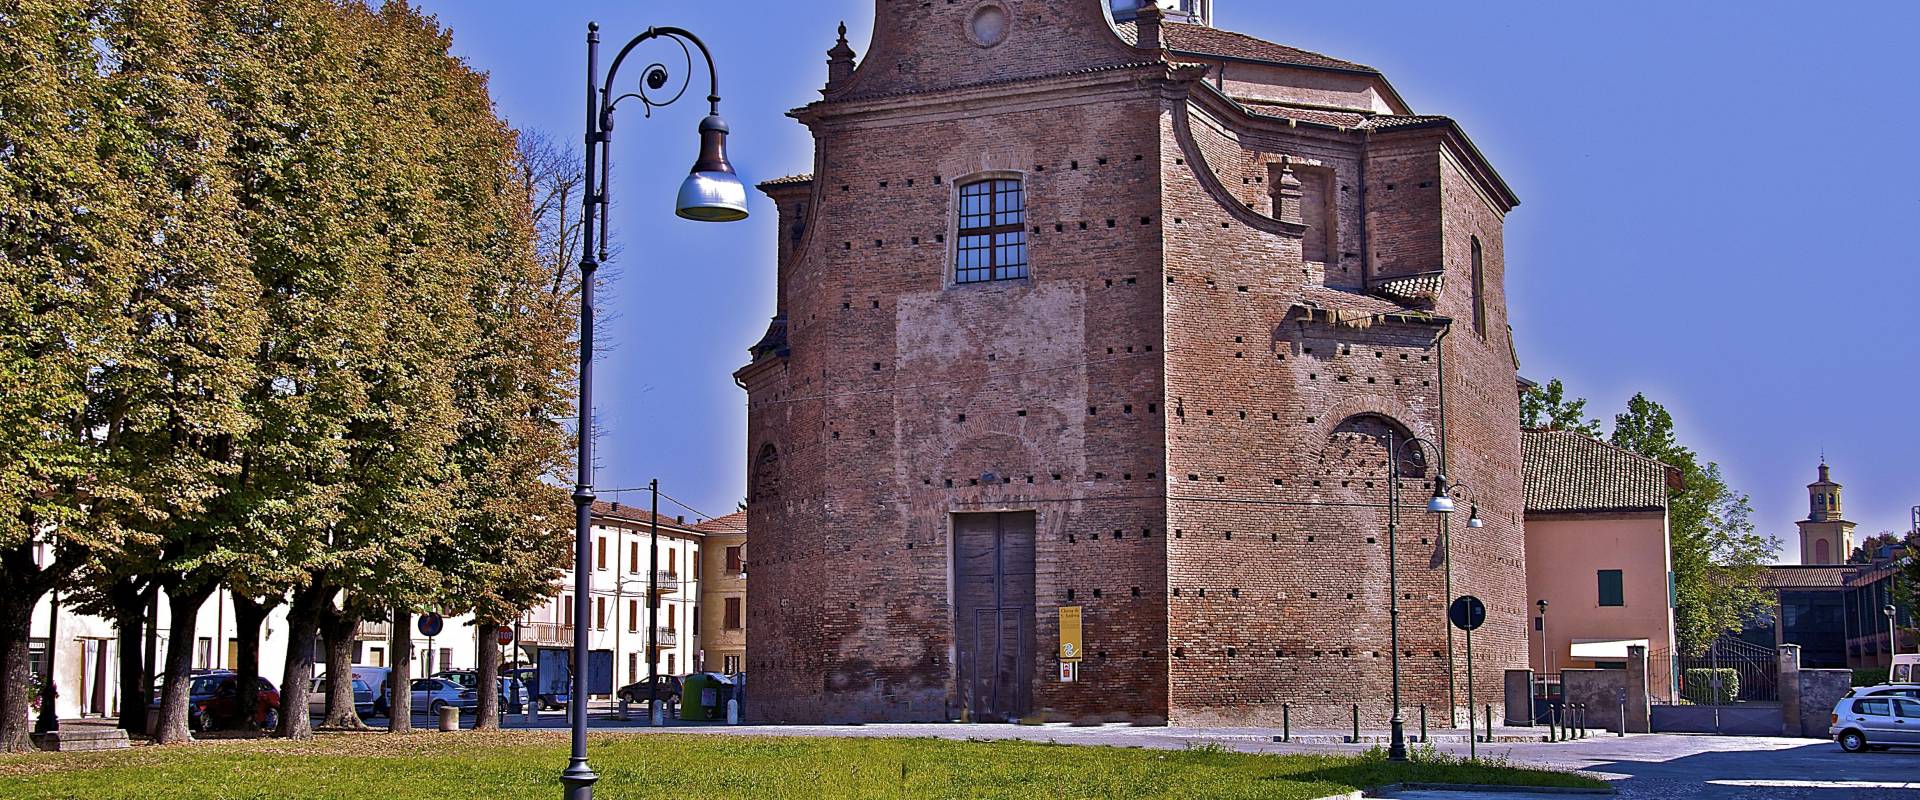 Prima semplice Cappella (IX secolo) poi chiesa parrocchiale di Sant Andrea photo by Caba2011